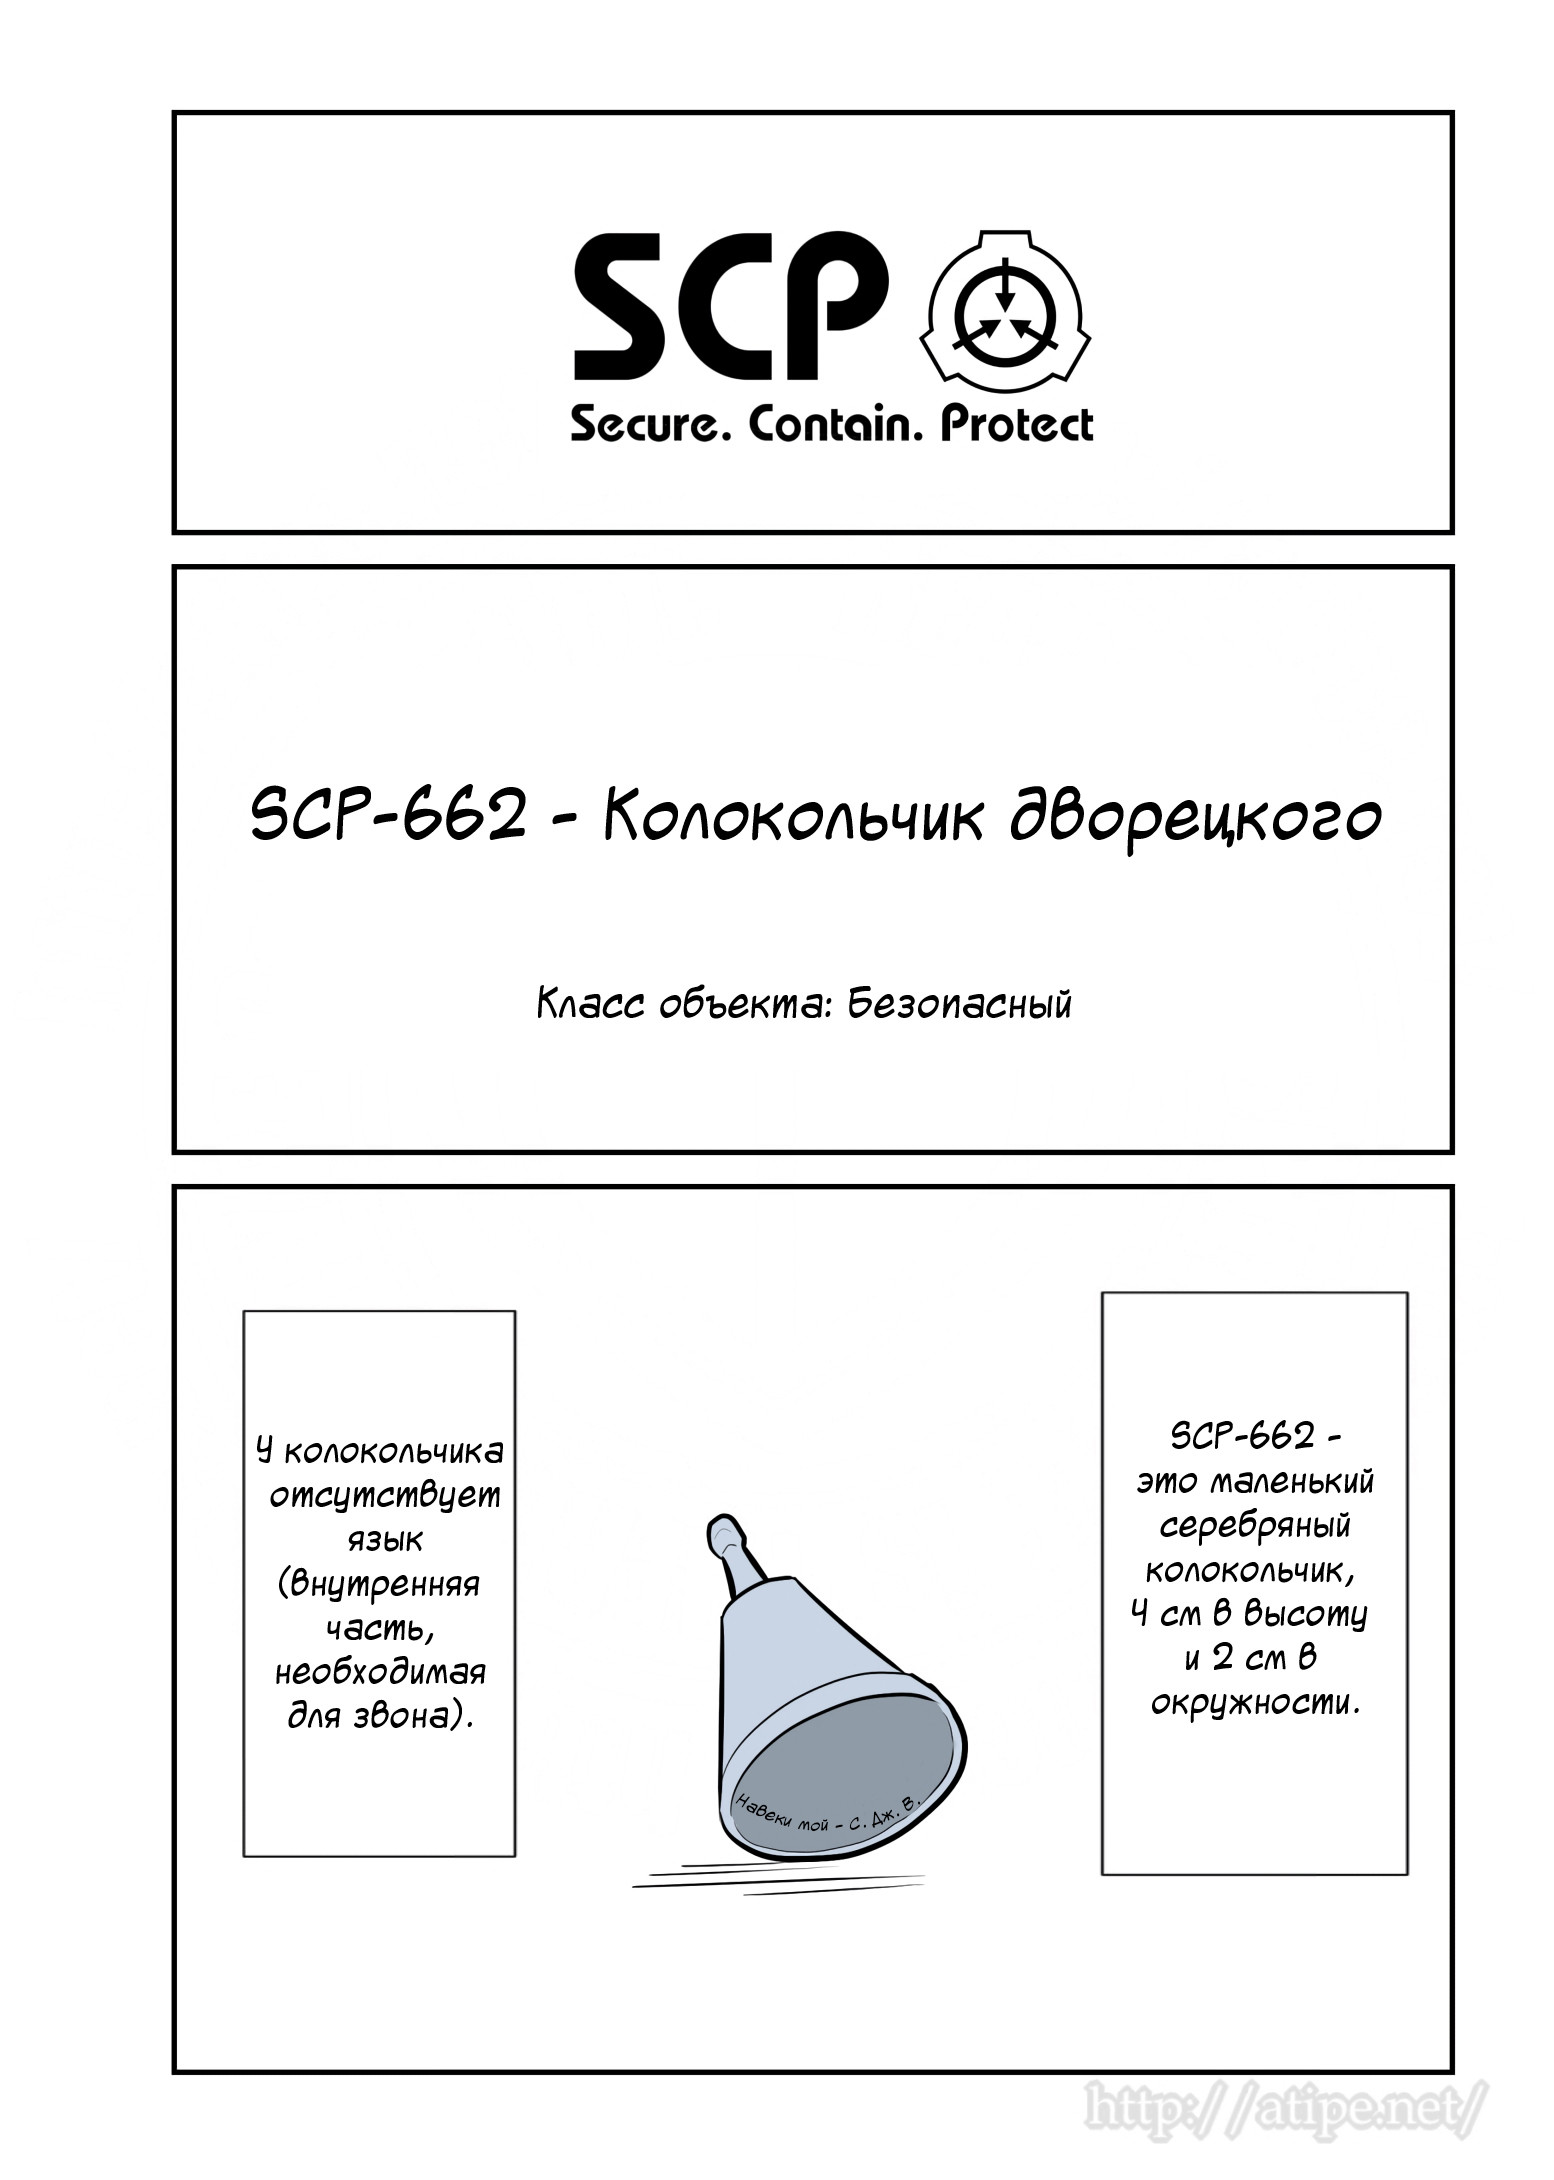 Упрощенный SCP 1 - 68 SCP-662